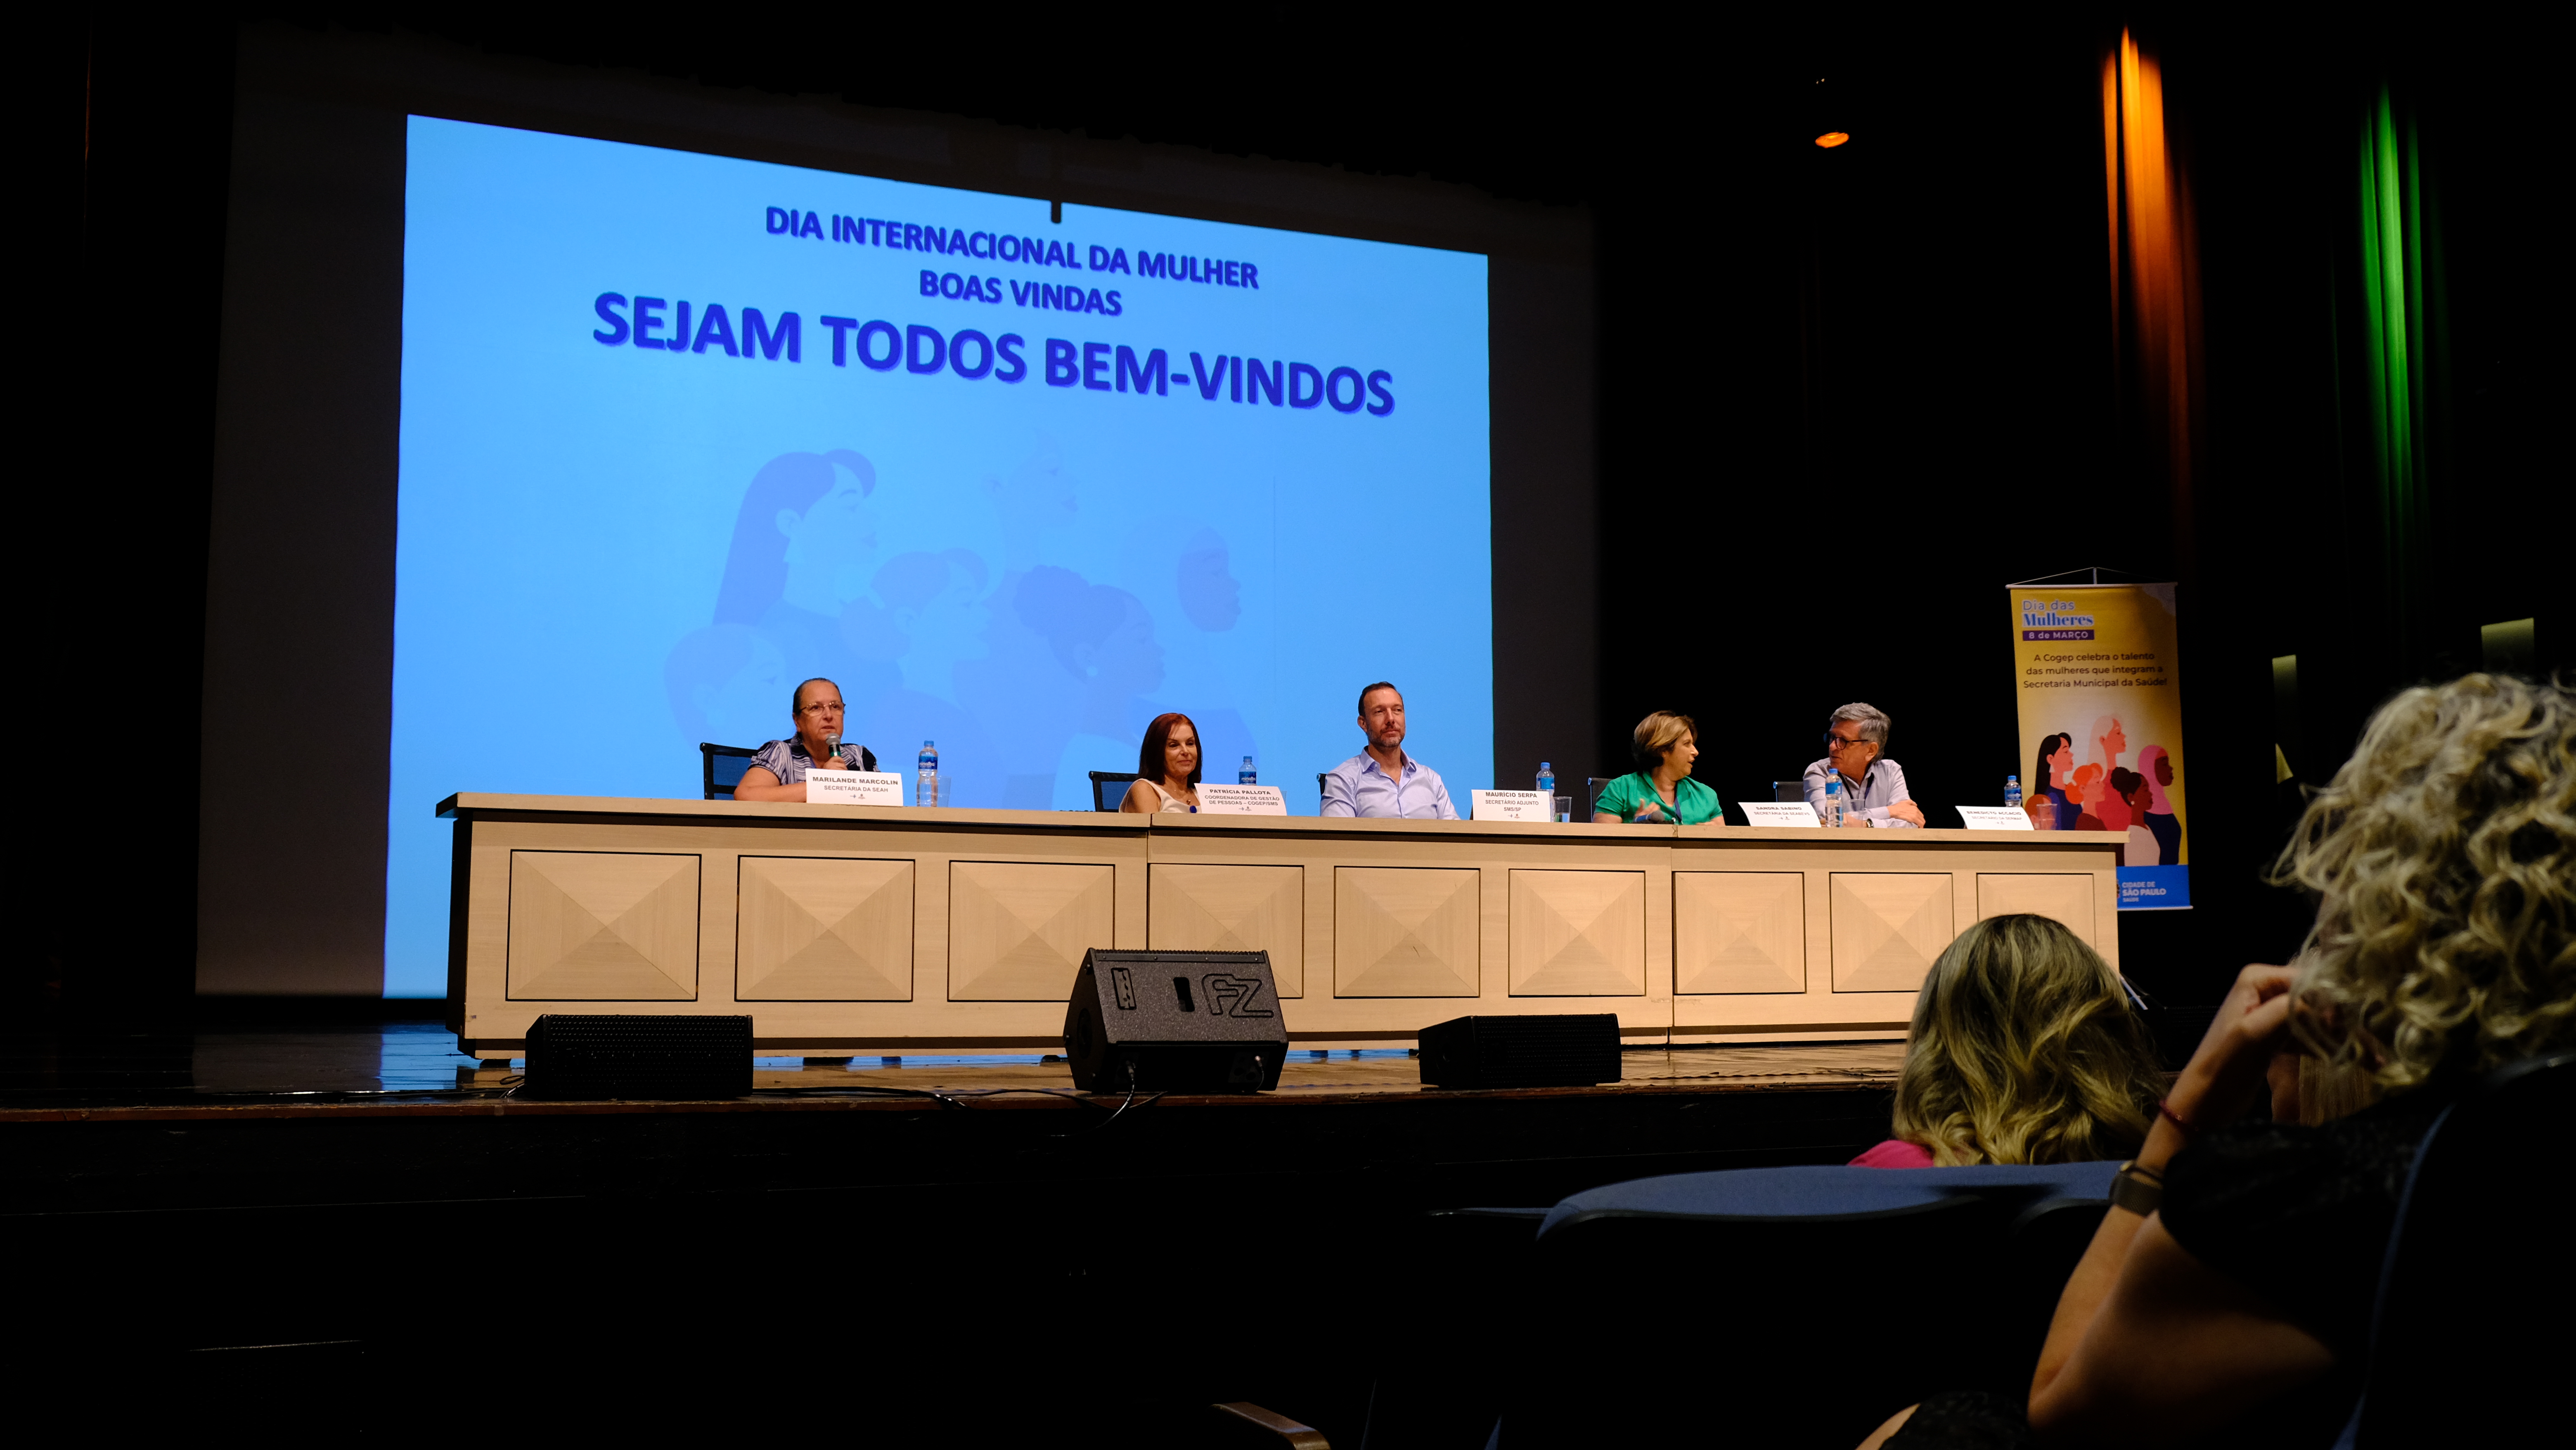 Na imagem está uma mesa localizada no centro da imagem. Sentada a ela estão: Maurício Serpa, Sandra Sabino, Marilande Marcolin, Patrícia Pallota e o Benedicto Accacio